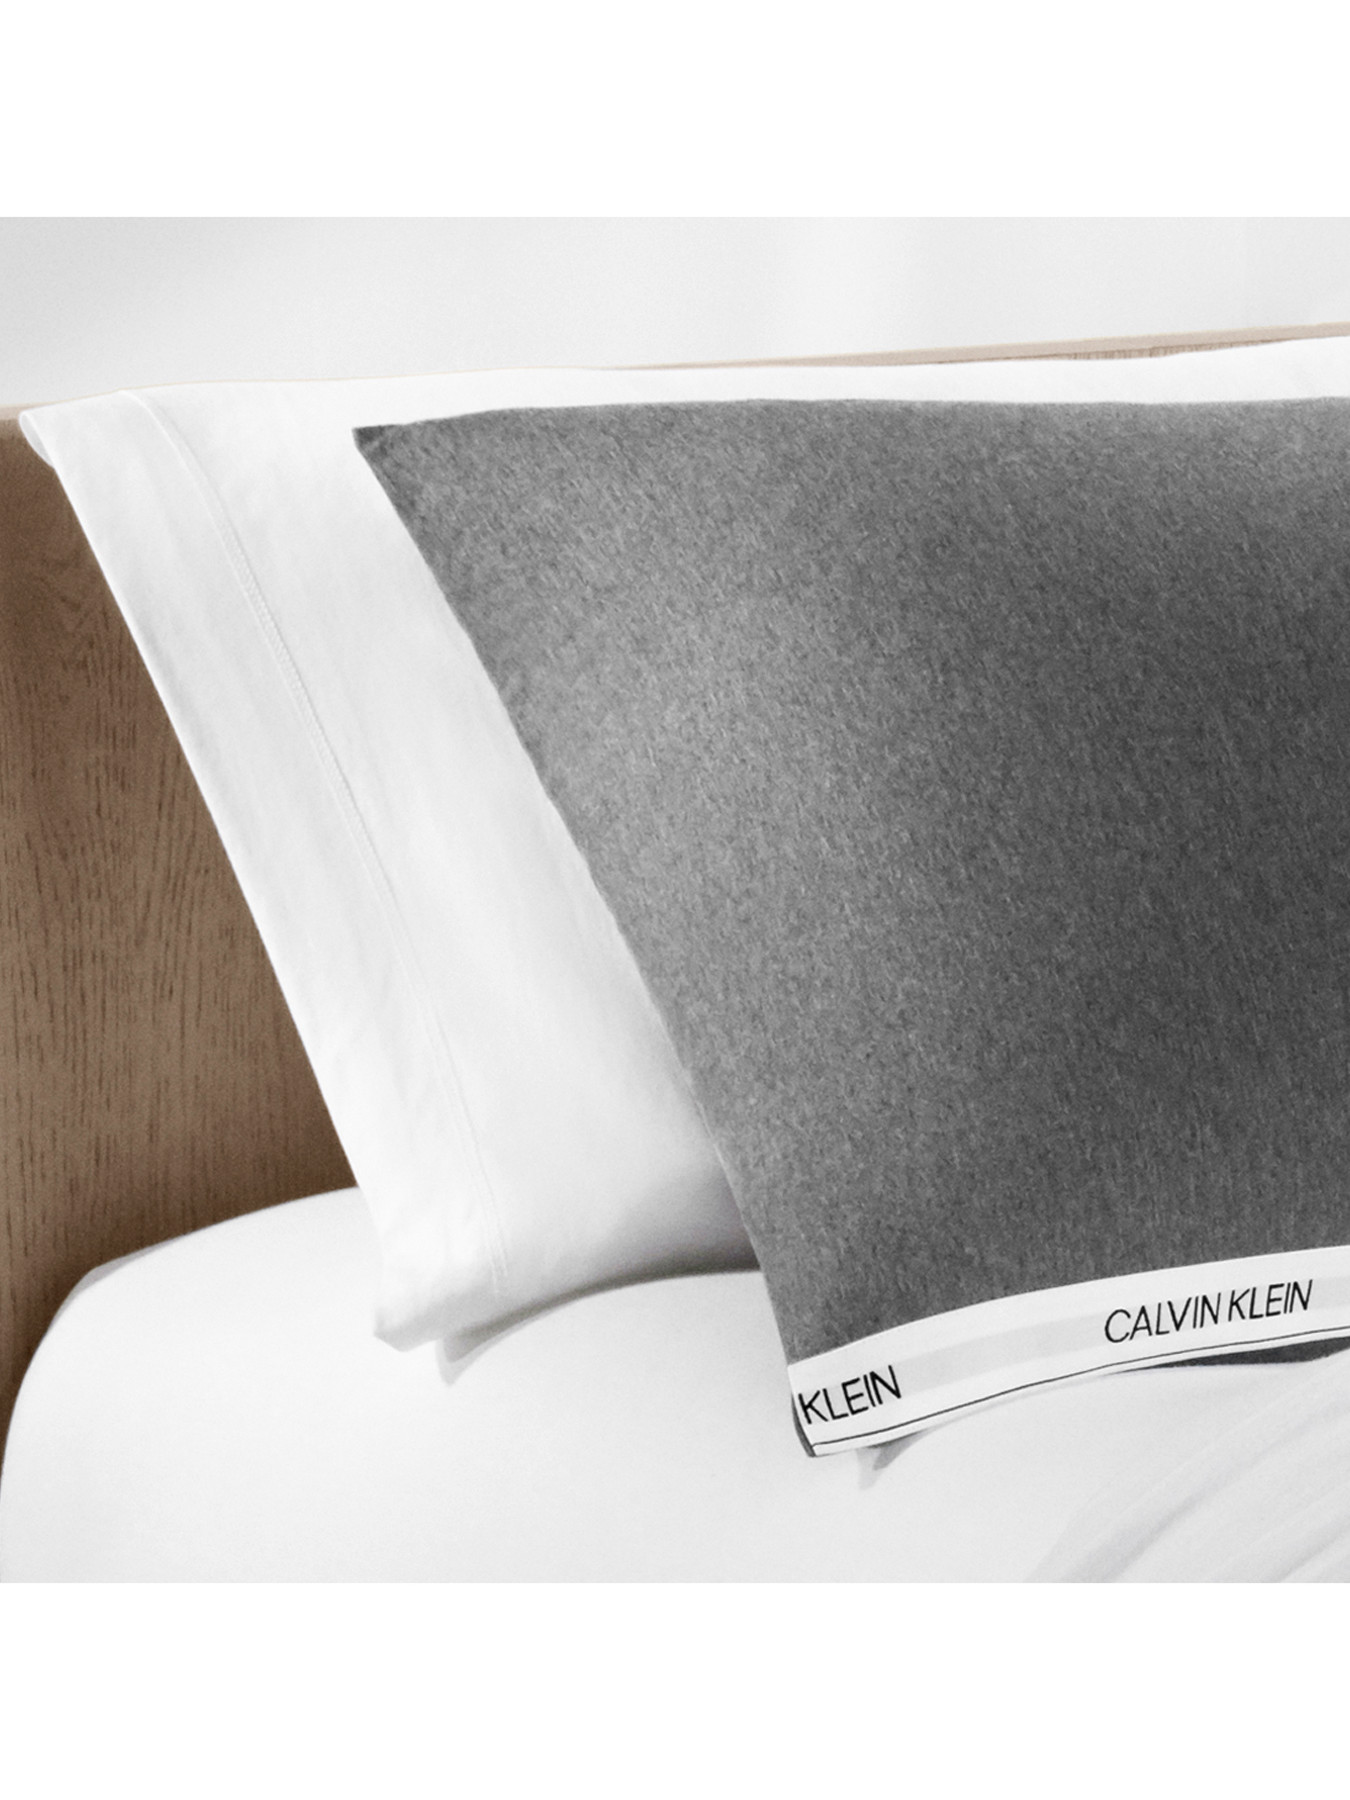 Calvin Klein Classic Pillowcase Pair | Fenwick